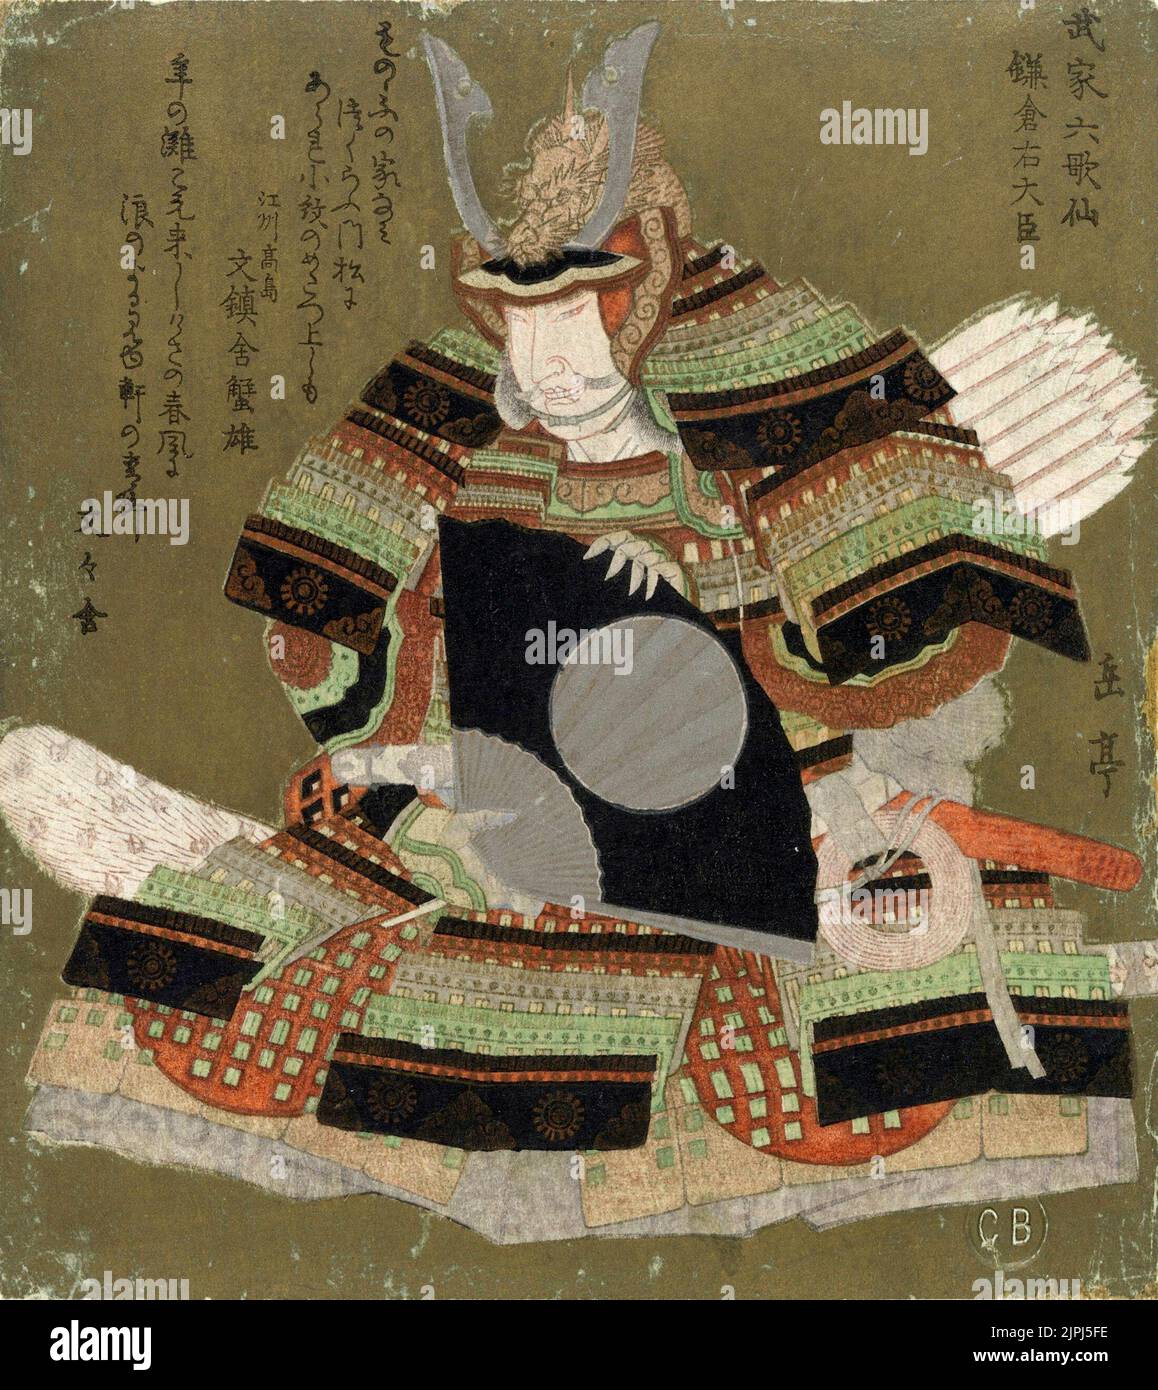 Painting of Kamakura Udaijin (Minamoto no Sanetomo) by Yashima Gakutei. Minamoto no Sanetomo (1192 – 1219, r. 1203–1219) the third shōgun of the Kamakura shogunate. Stock Photo